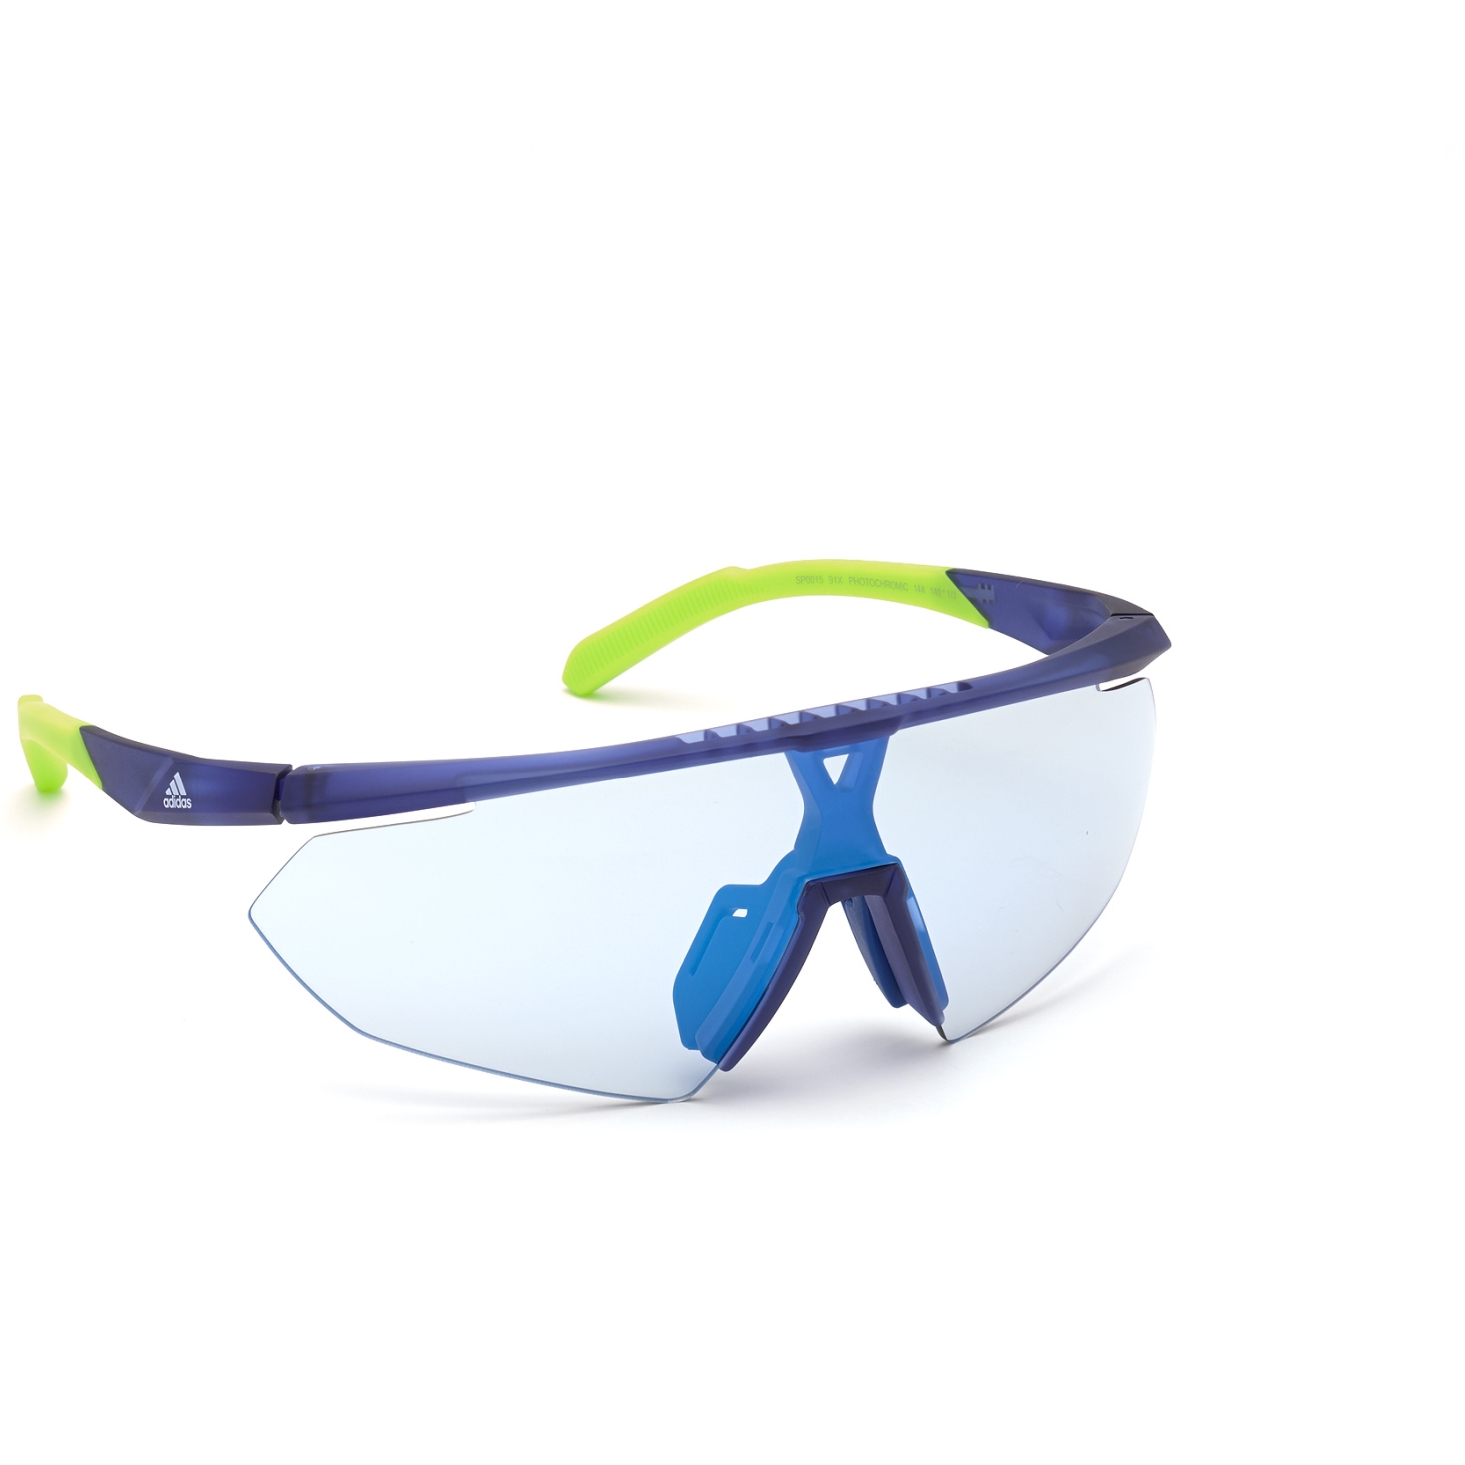 Bild von adidas Sp0015 Injected Sonnenbrille - Frosted Blue / Vario Mirror Blue